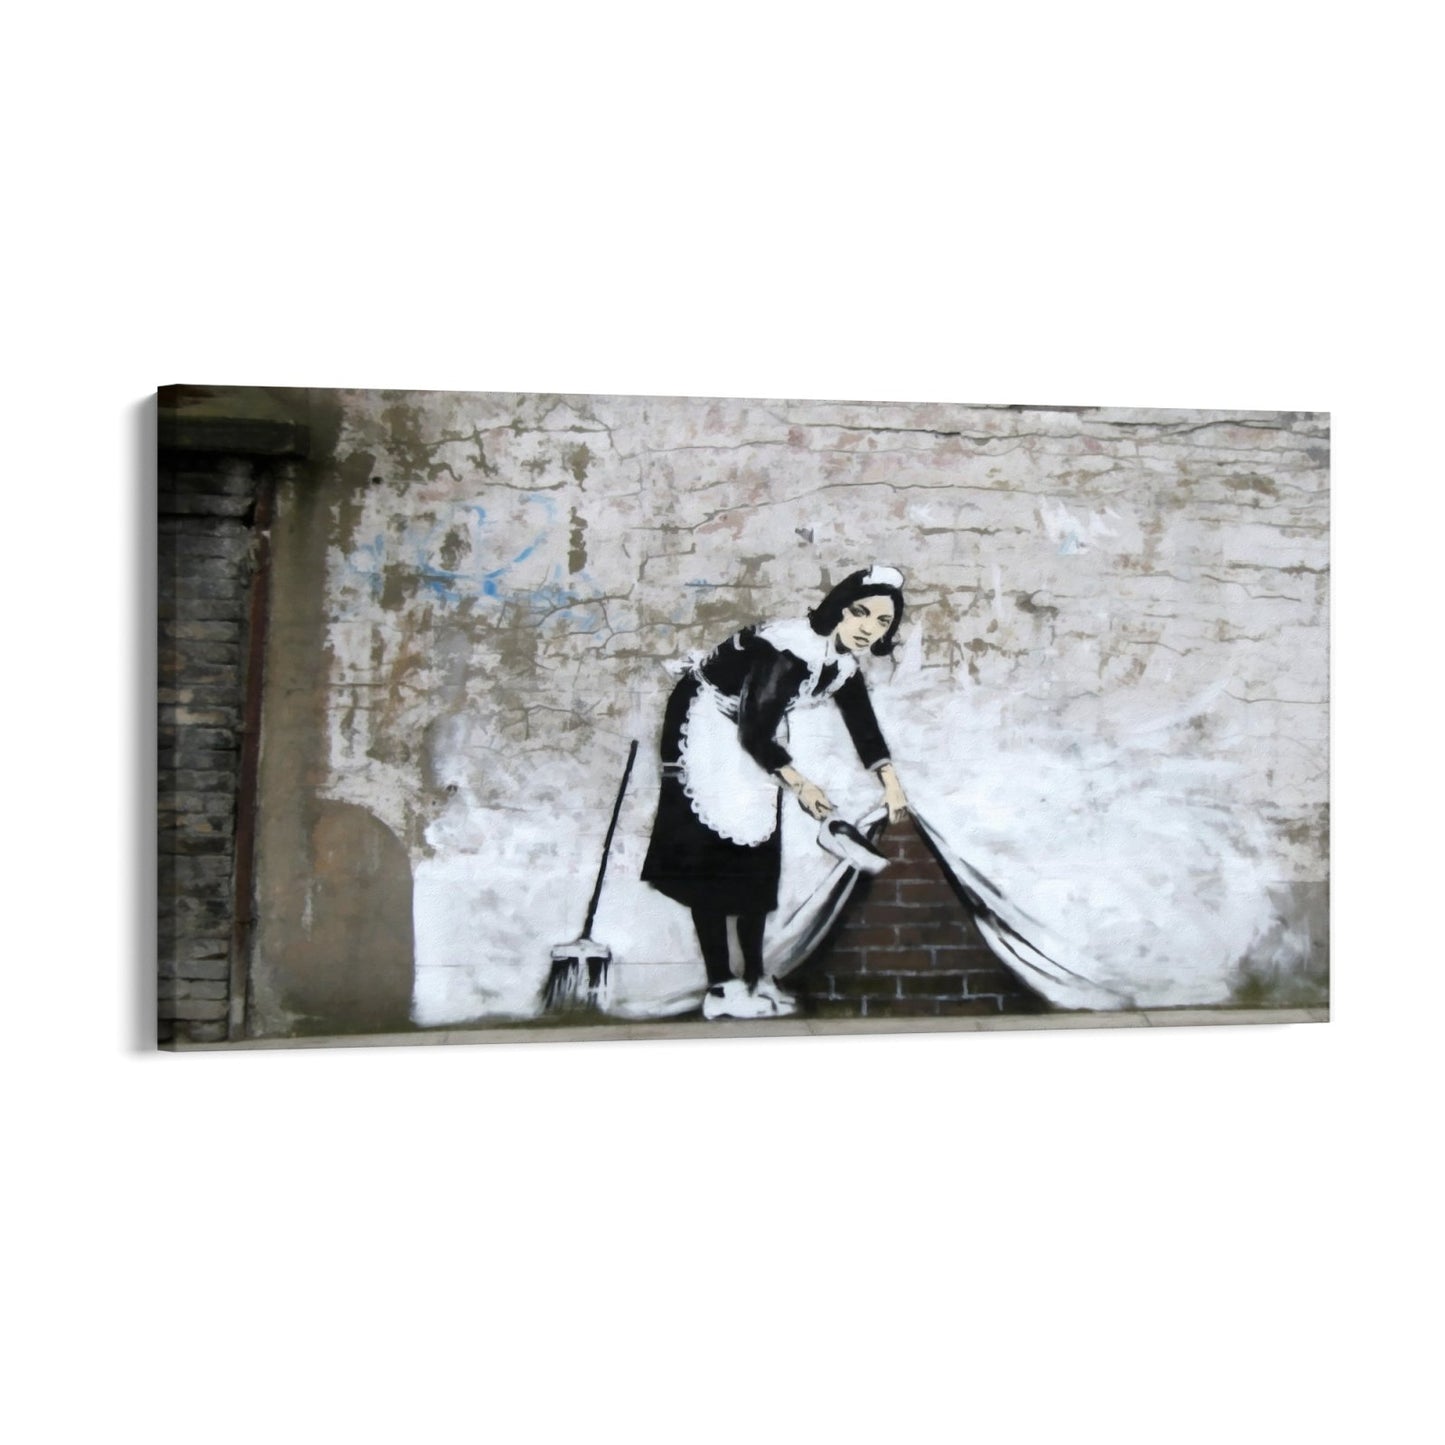 Fej det under gulvtæppet – London, Banksy